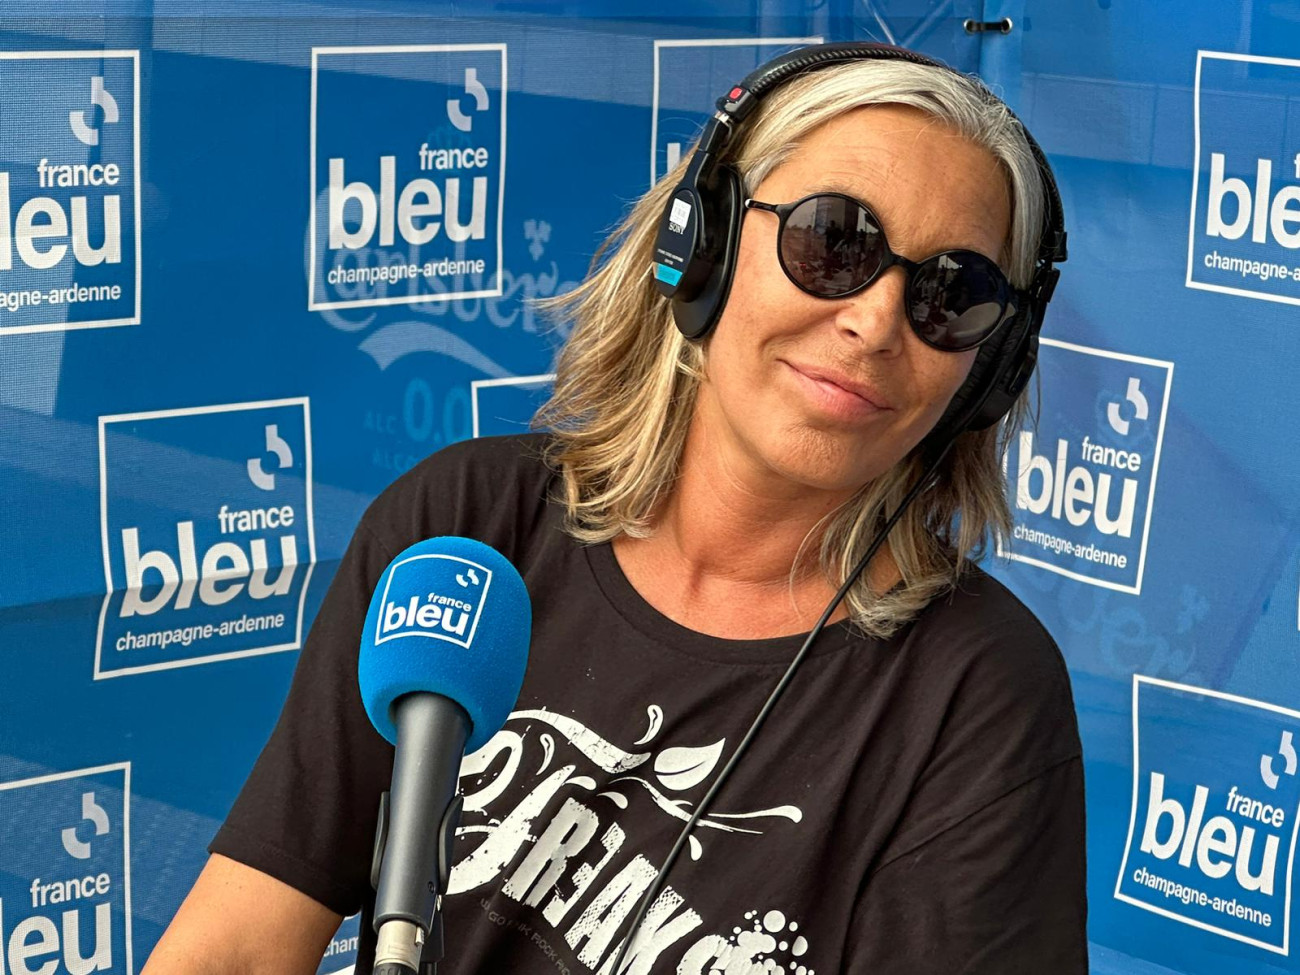 Zazie en interview sur France Bleu avant le concert de Reims